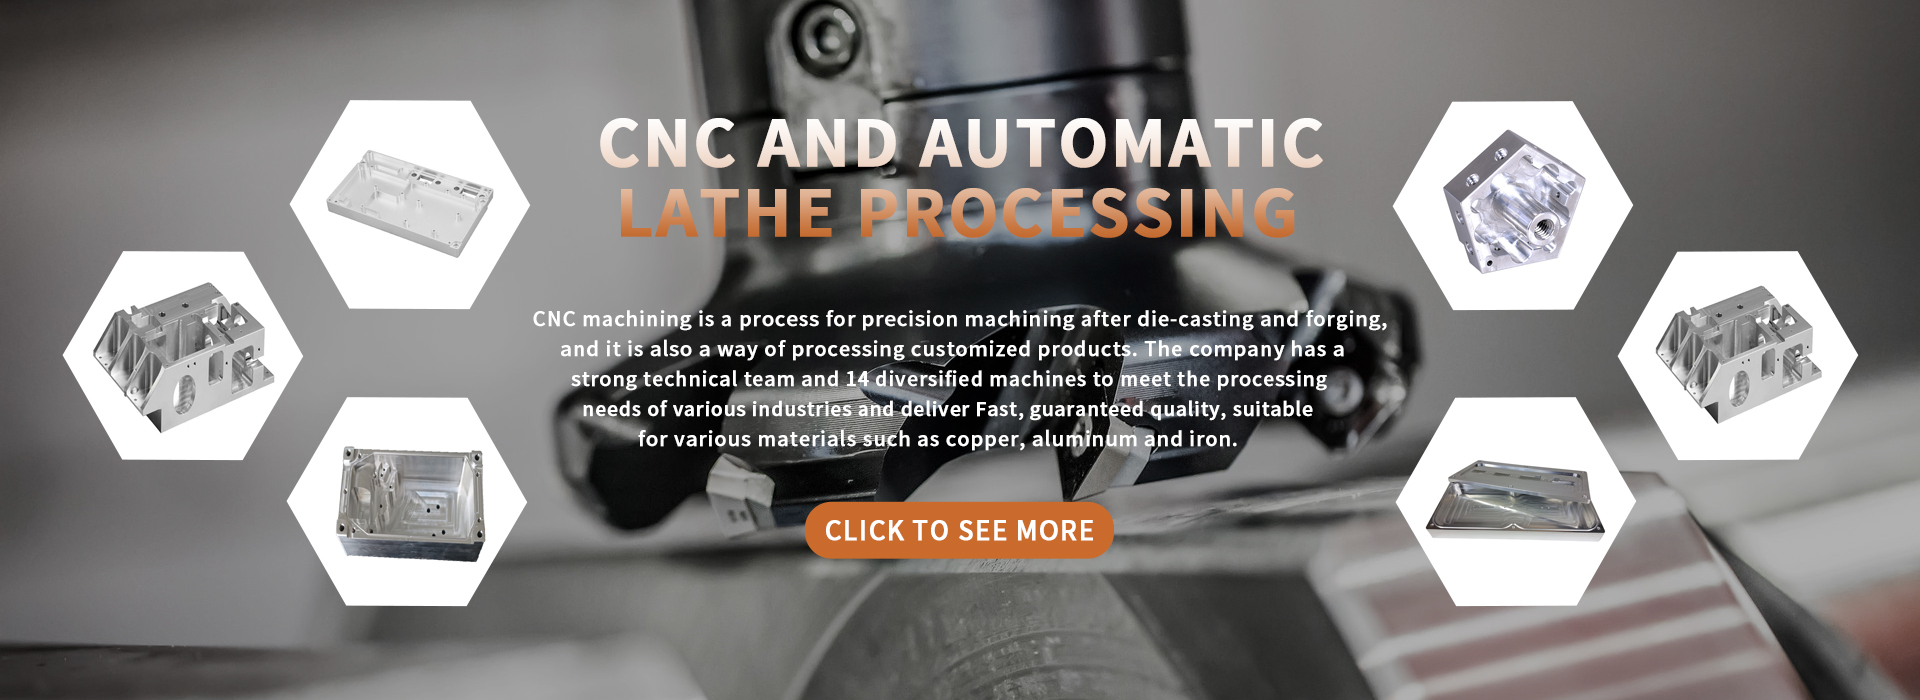 CNC en automatische draaibankverwerking